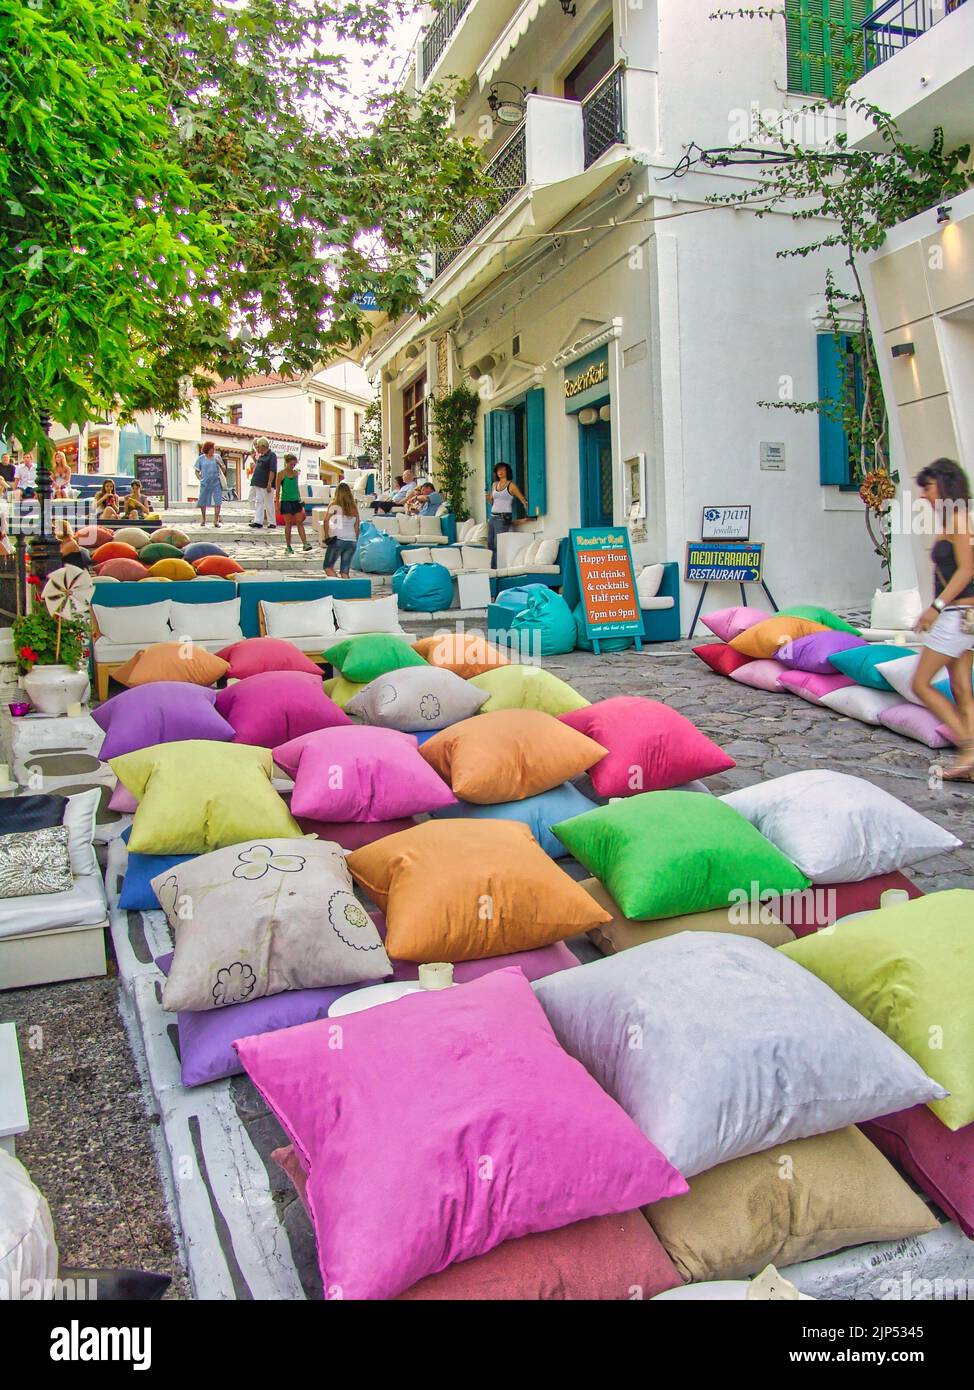 Un'immagine verticale di un accogliente caffè con cuscini colorati nella principale città dell'isola di Skiathos, in Grecia Foto Stock